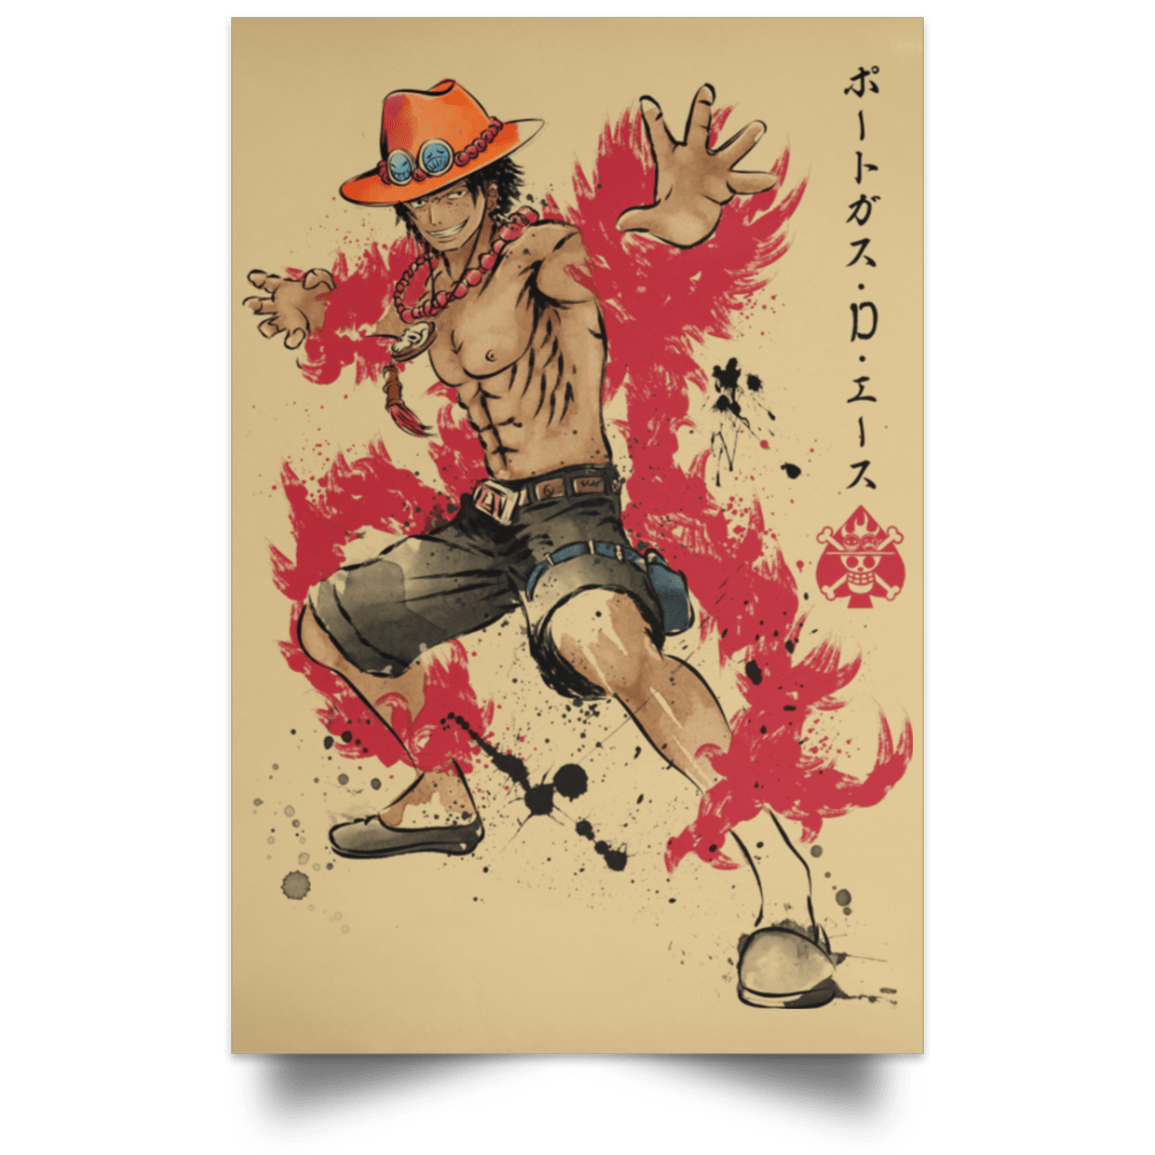 Housewares Tan / 12" x 18" Fire Fist Ace Portrait Poster